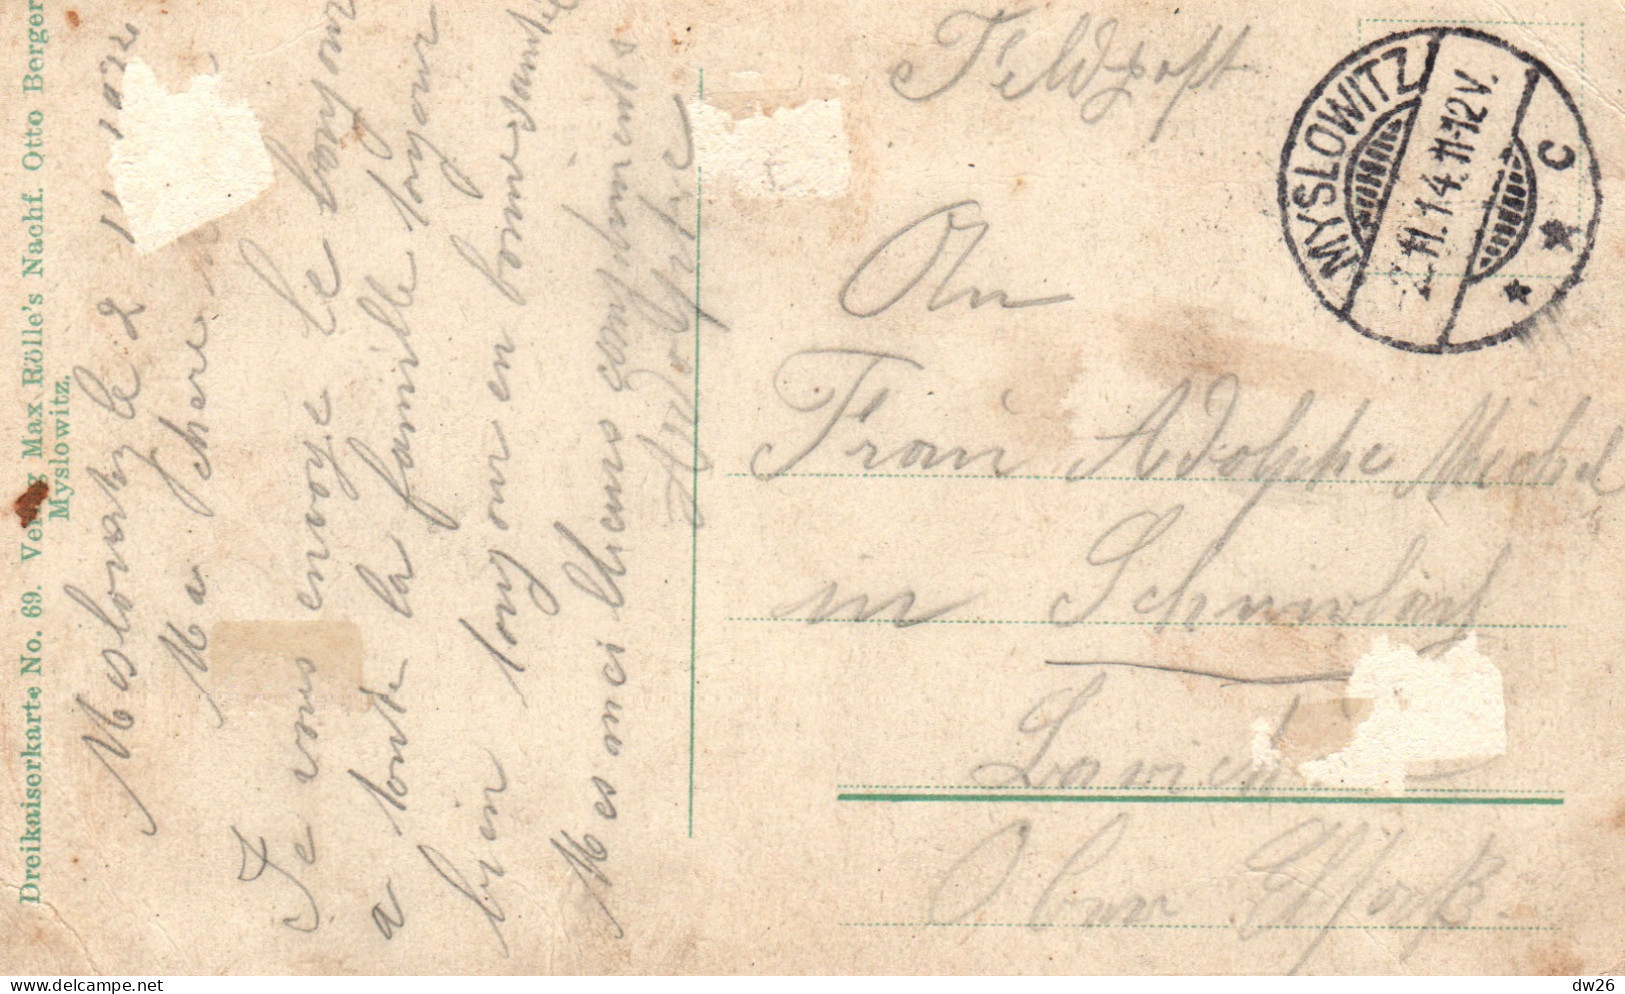 Représentation De Timbres: Stamps Deutschland, Russland, Osterreich, Bismarckturm - Lithographie 1914 - Briefmarken (Abbildungen)